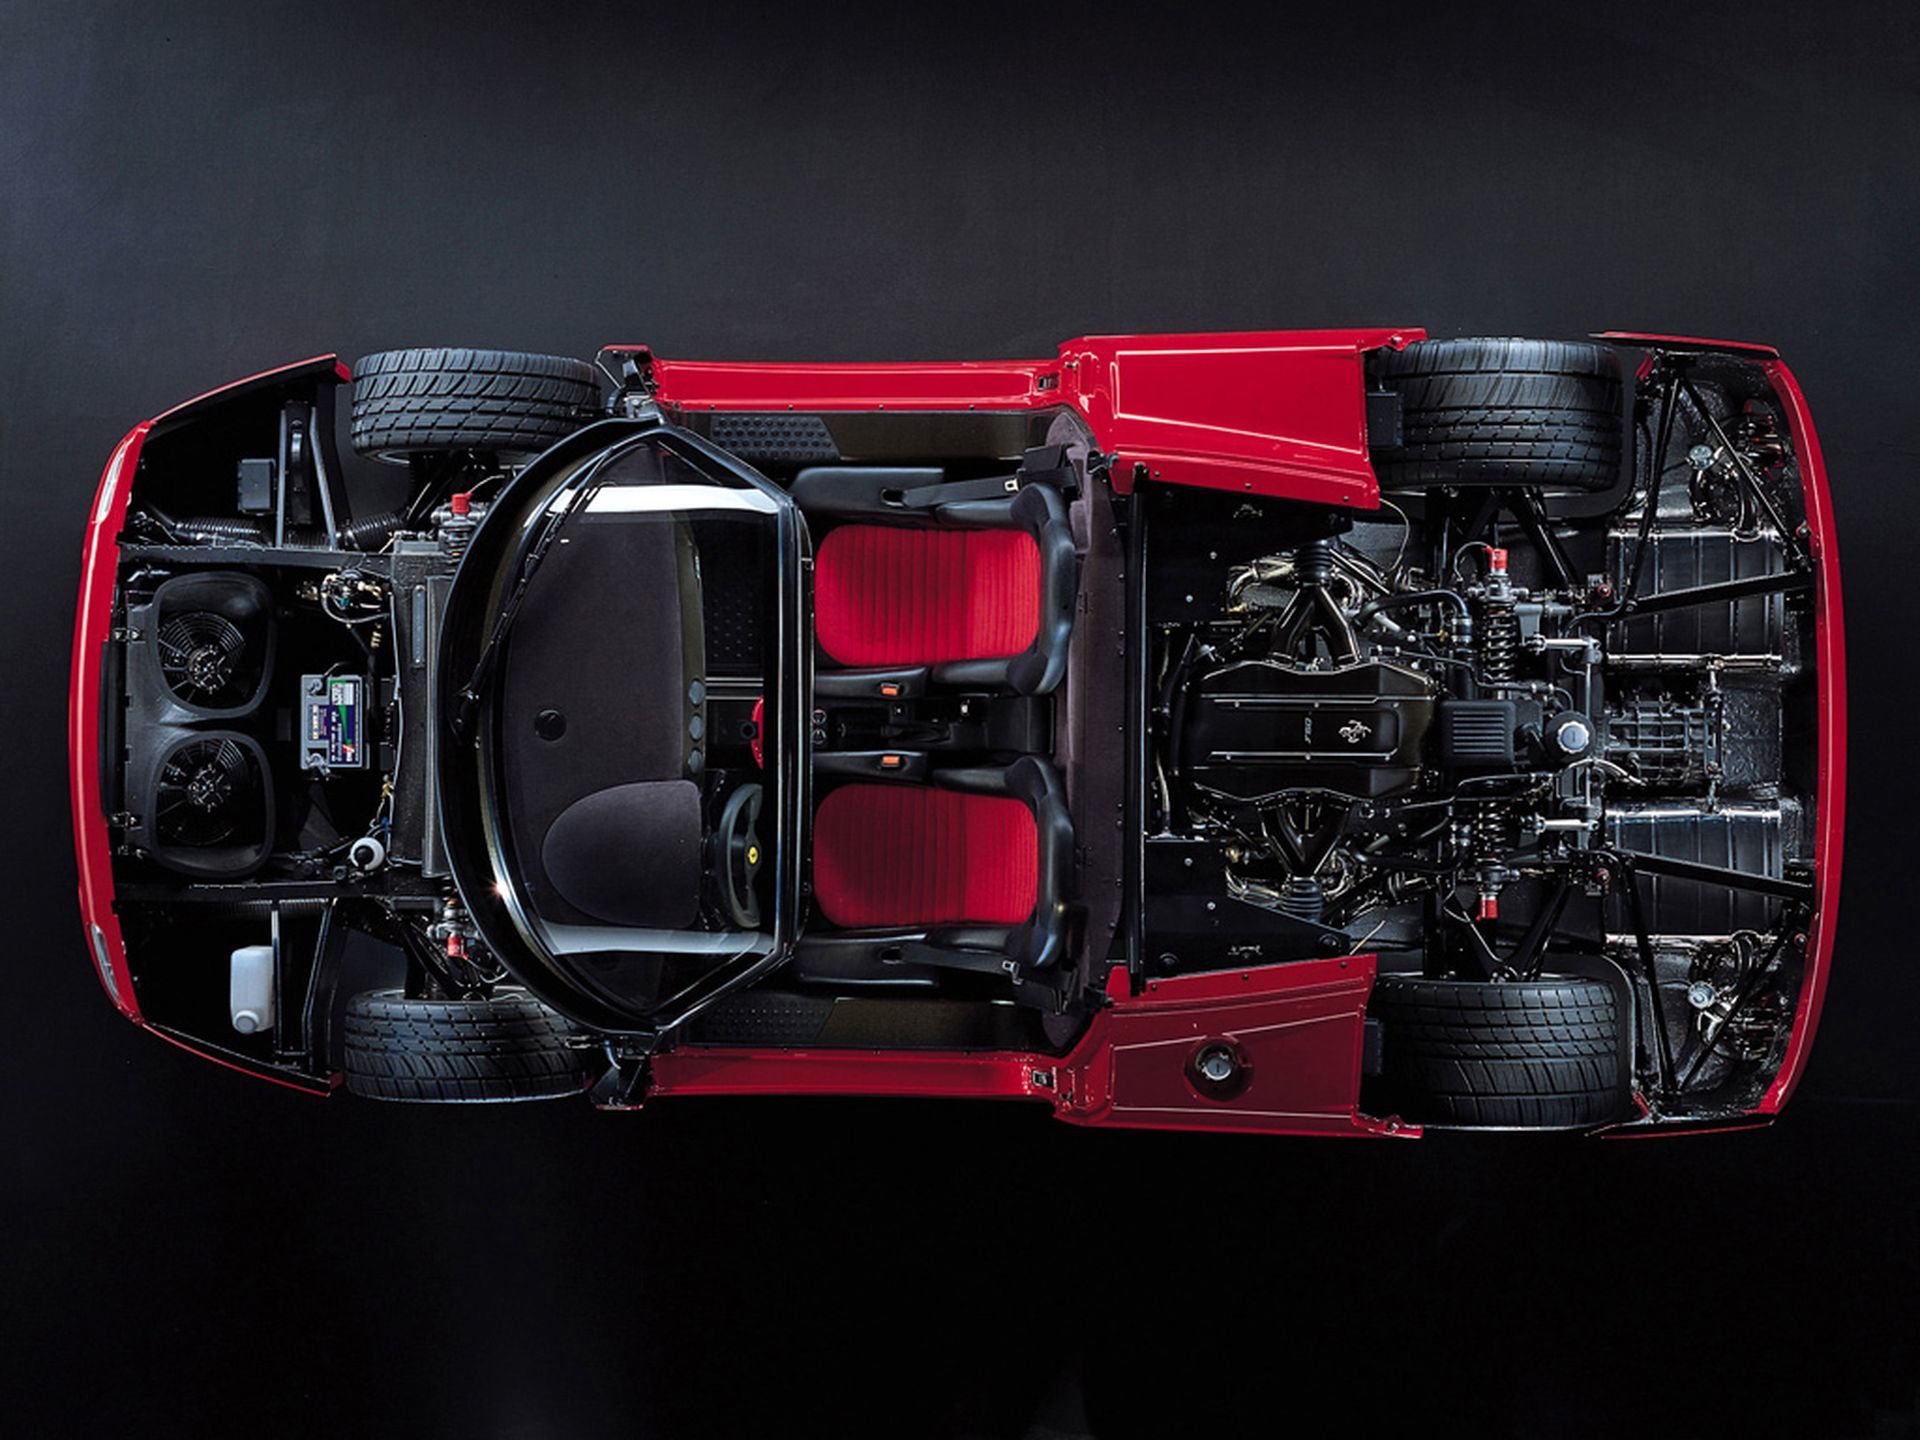 Ferrari F50, sem coberturas dianteira e traseira, visto de cima, com motor de Fórmula 1 V12 exposto